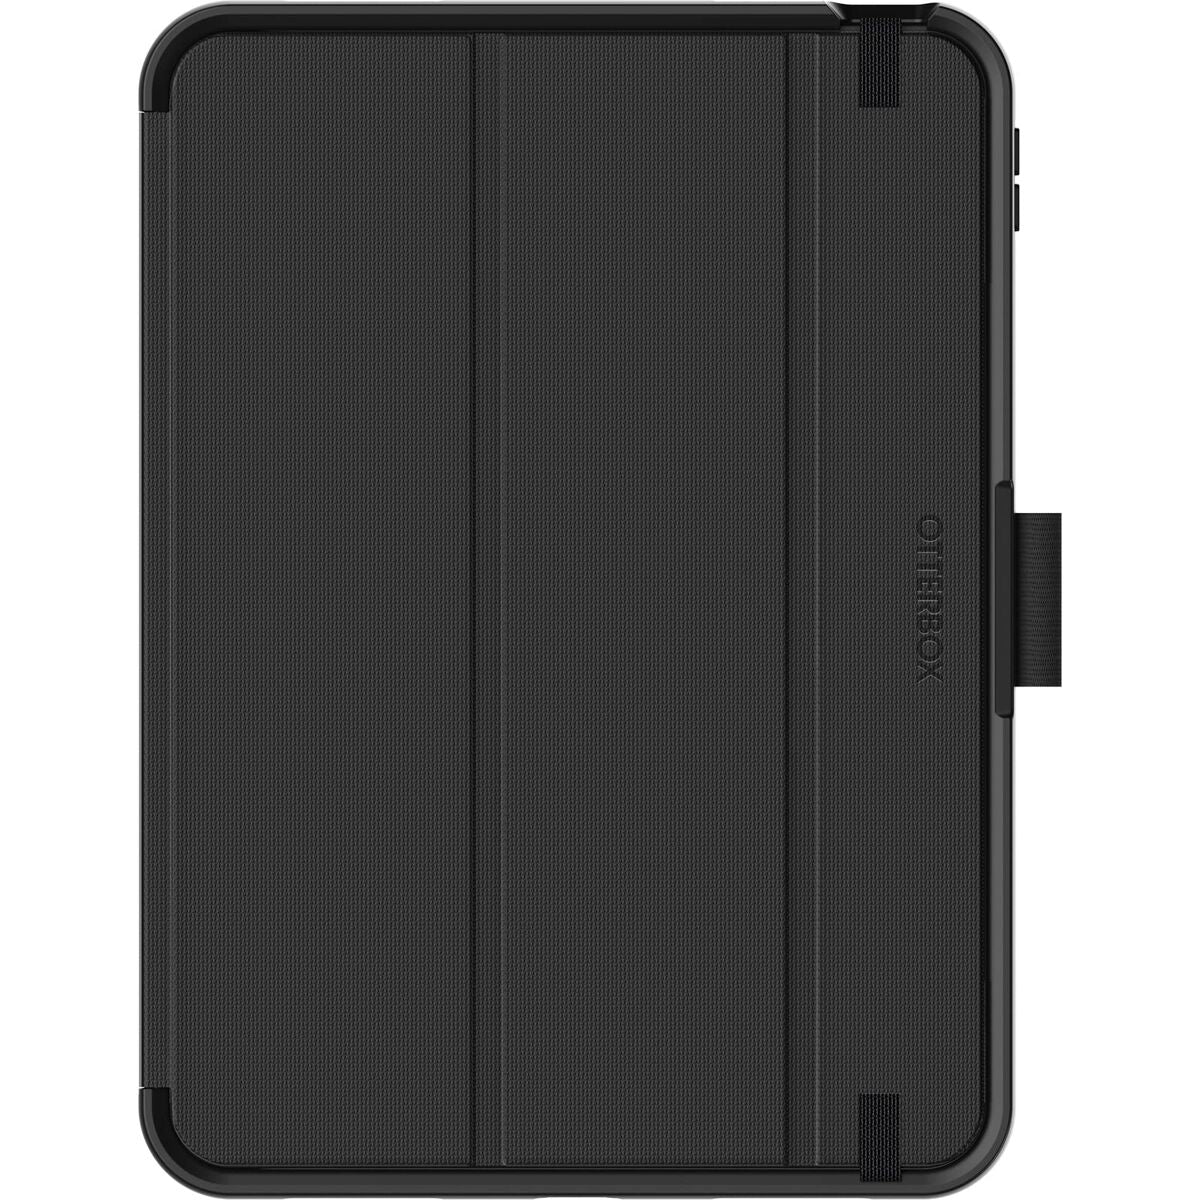 Étui pour iPad Otterbox 77-89975 Noir